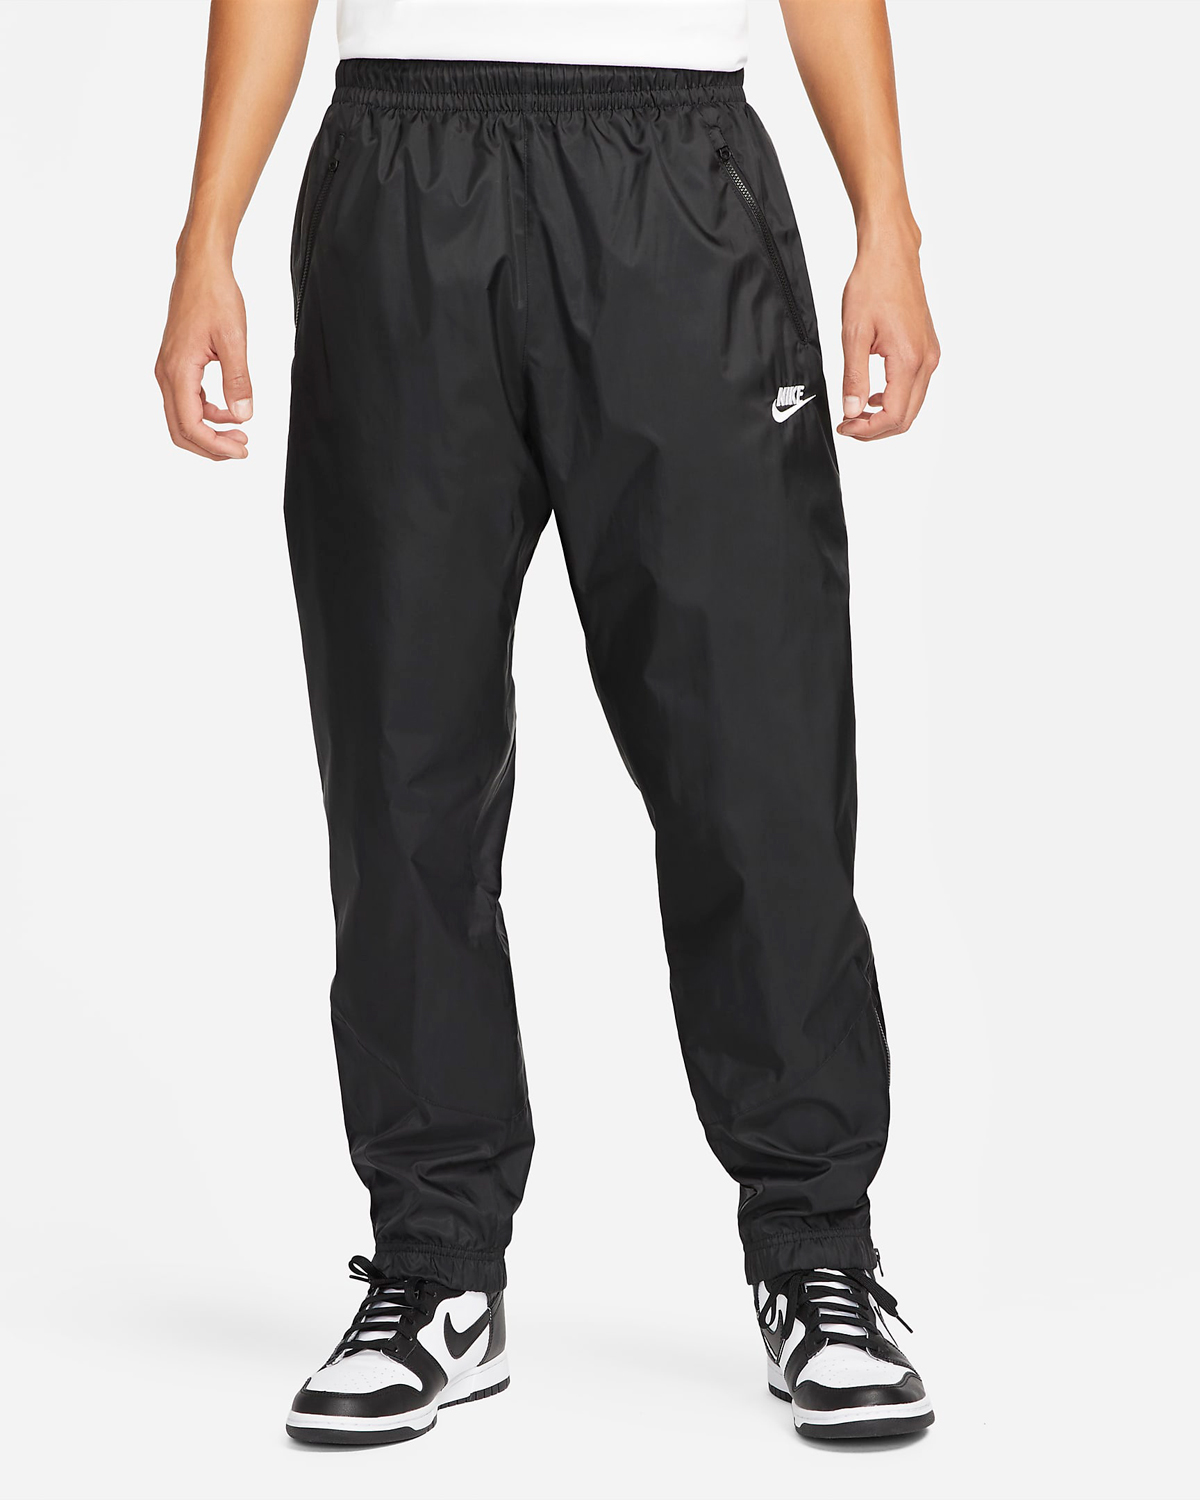 Nike Windrunner Woven Pants Black White 1